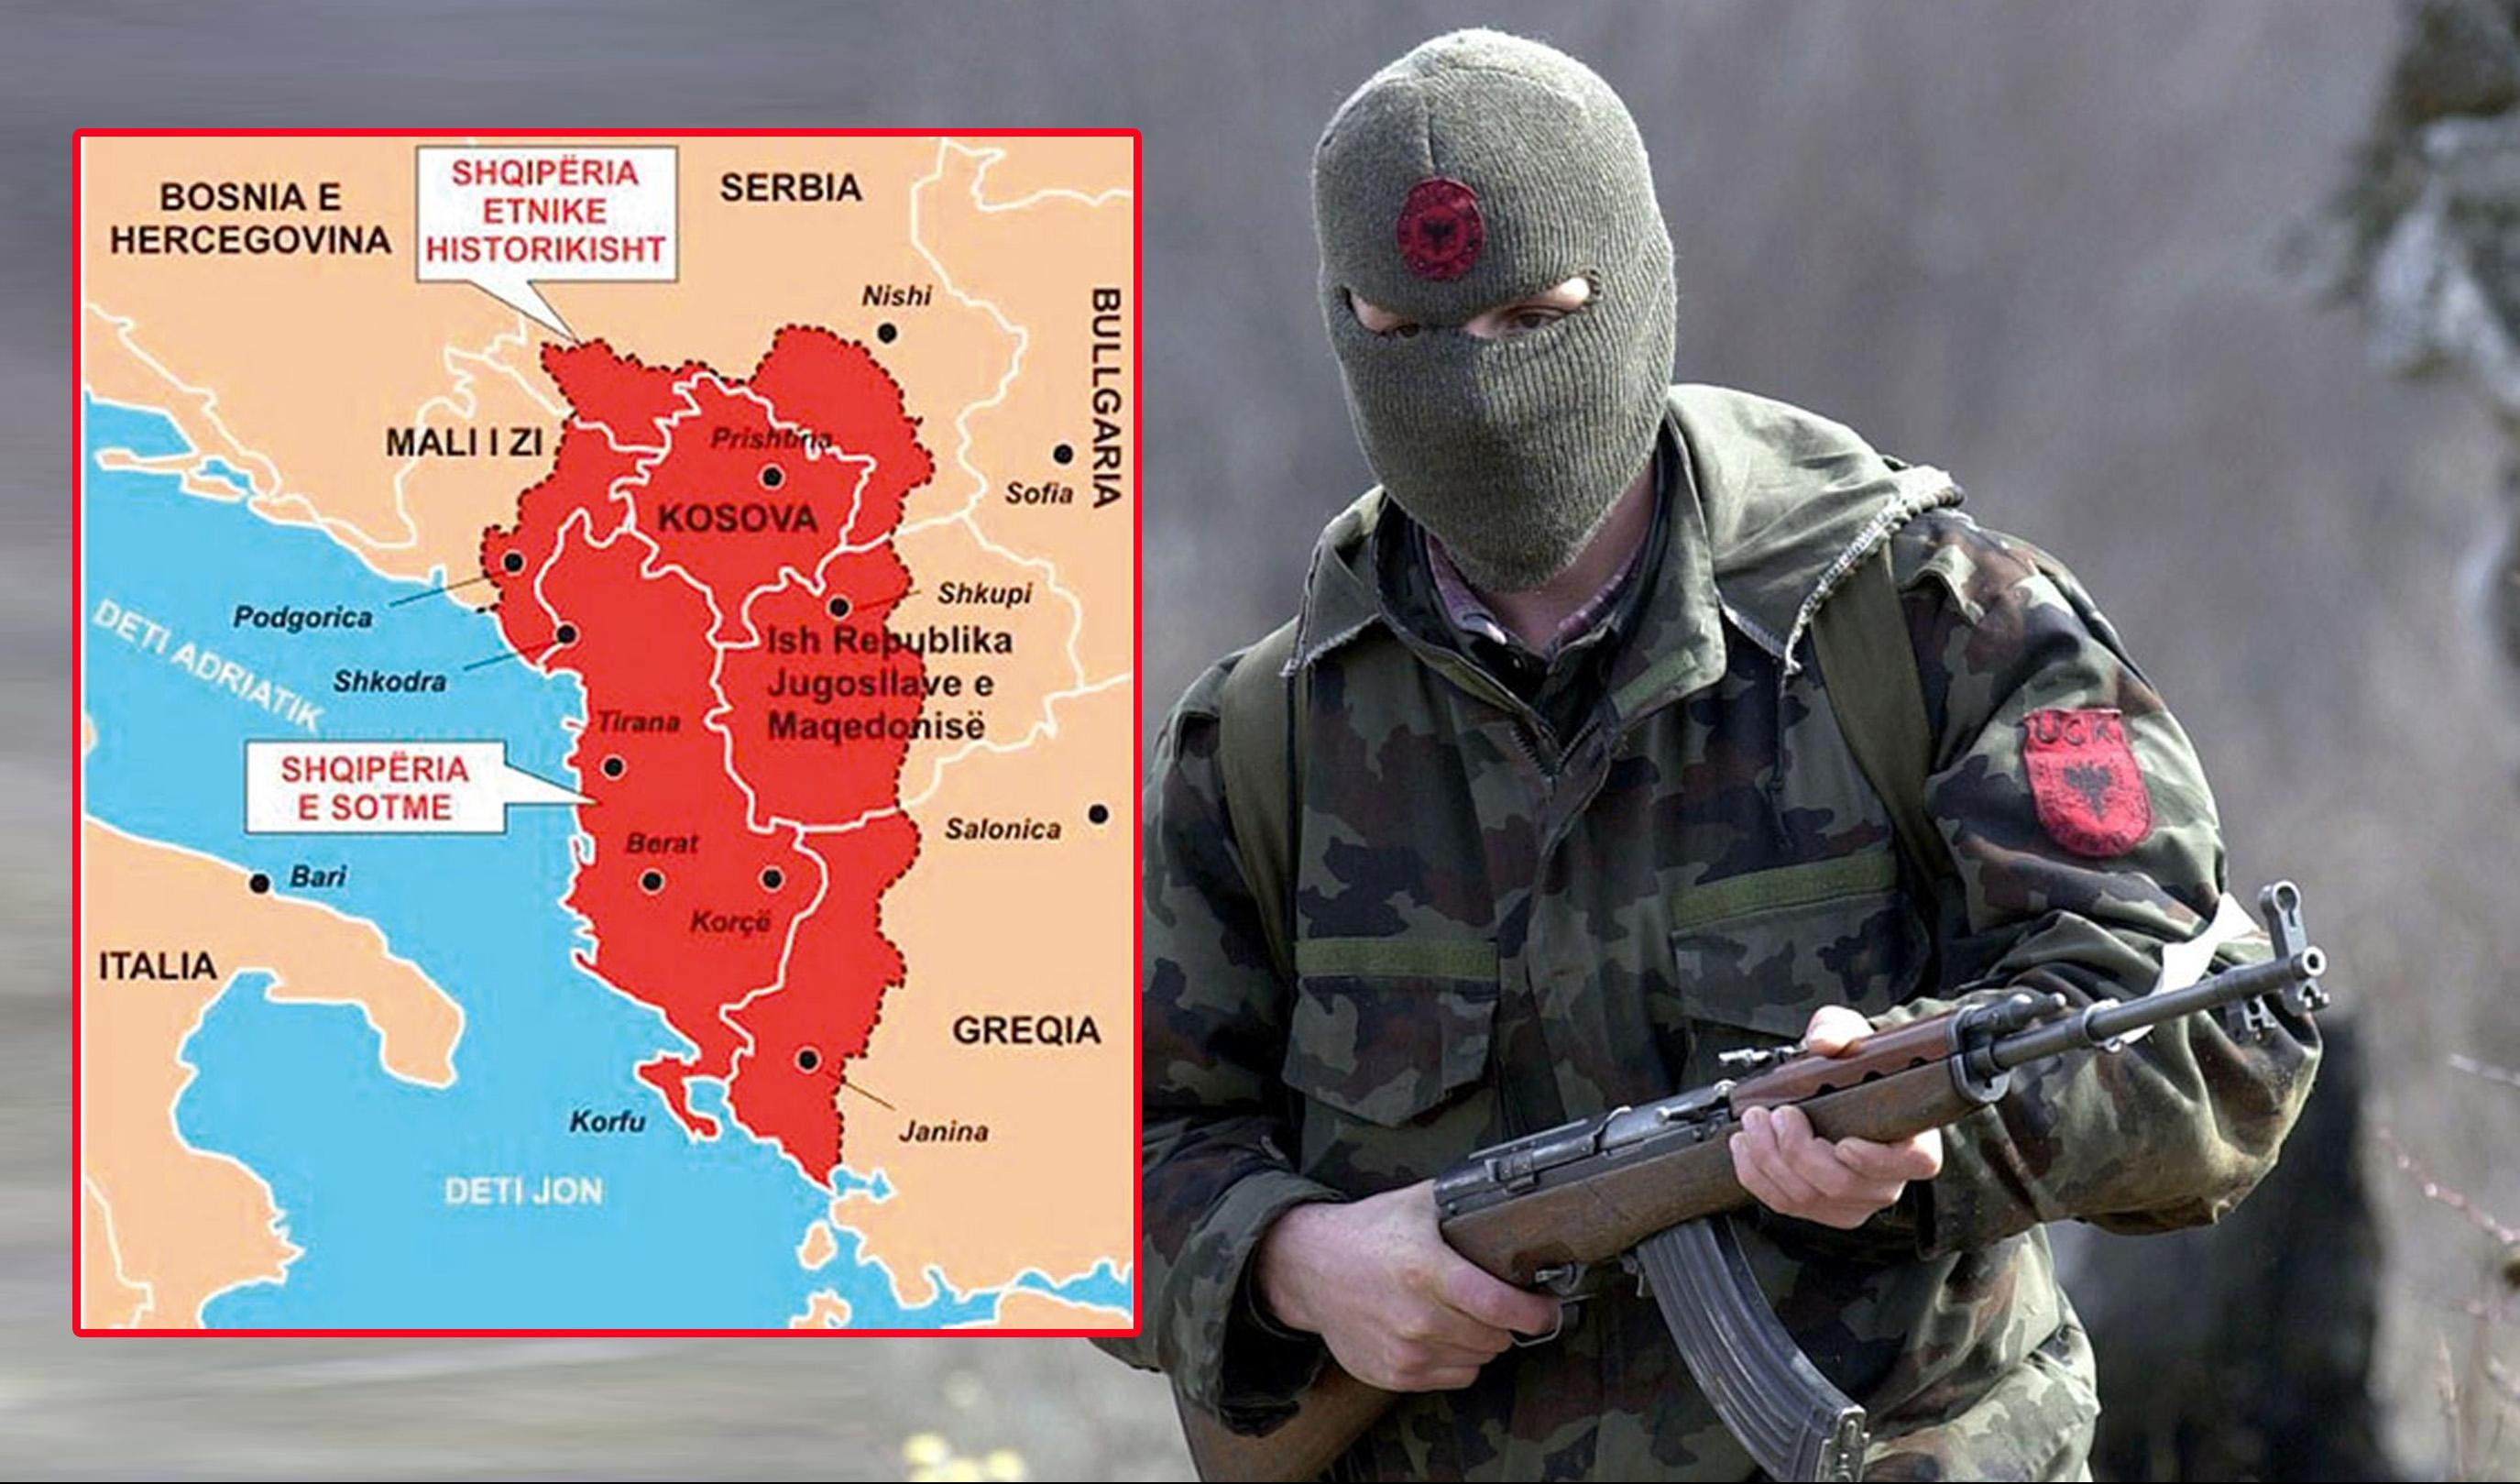 FAJNENŠENEL TAJMS DIŽE UZBUNU NA ZAPADU ZBOG SRBA, MAKEDONACA I GRKA - Velika Albanija velika opasnost na Balkanu, MOŽE LI SE ZAUSTAVITI!